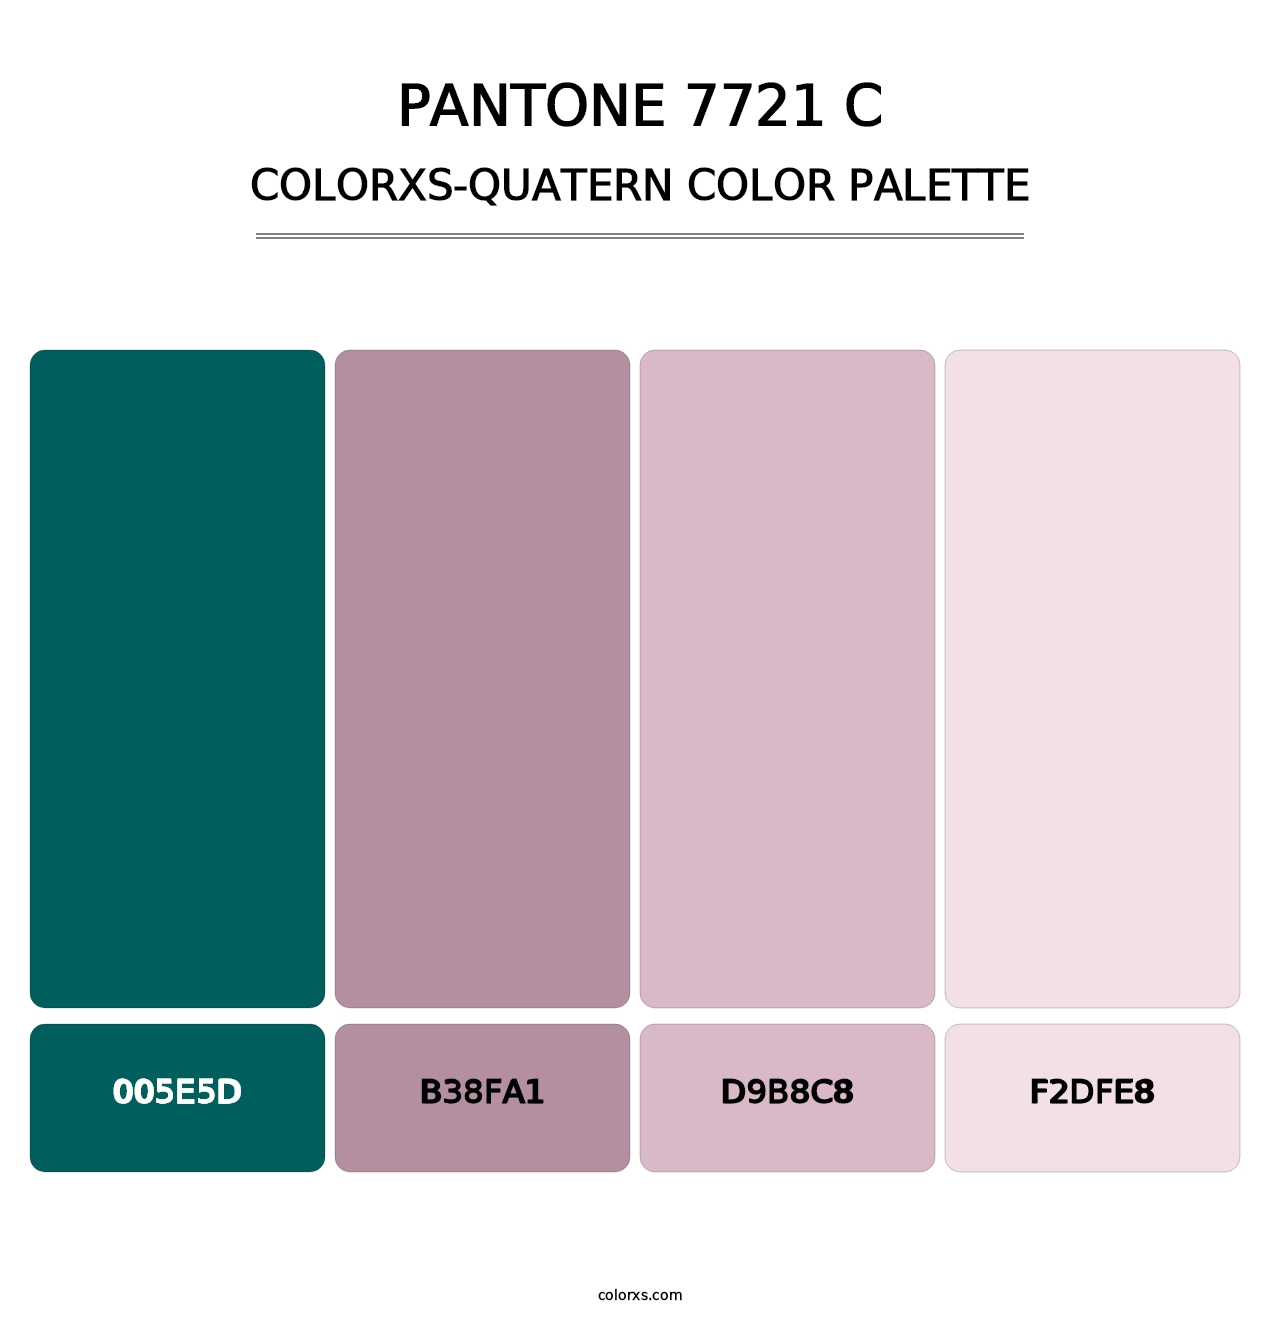 PANTONE 7721 C - Colorxs Quatern Palette